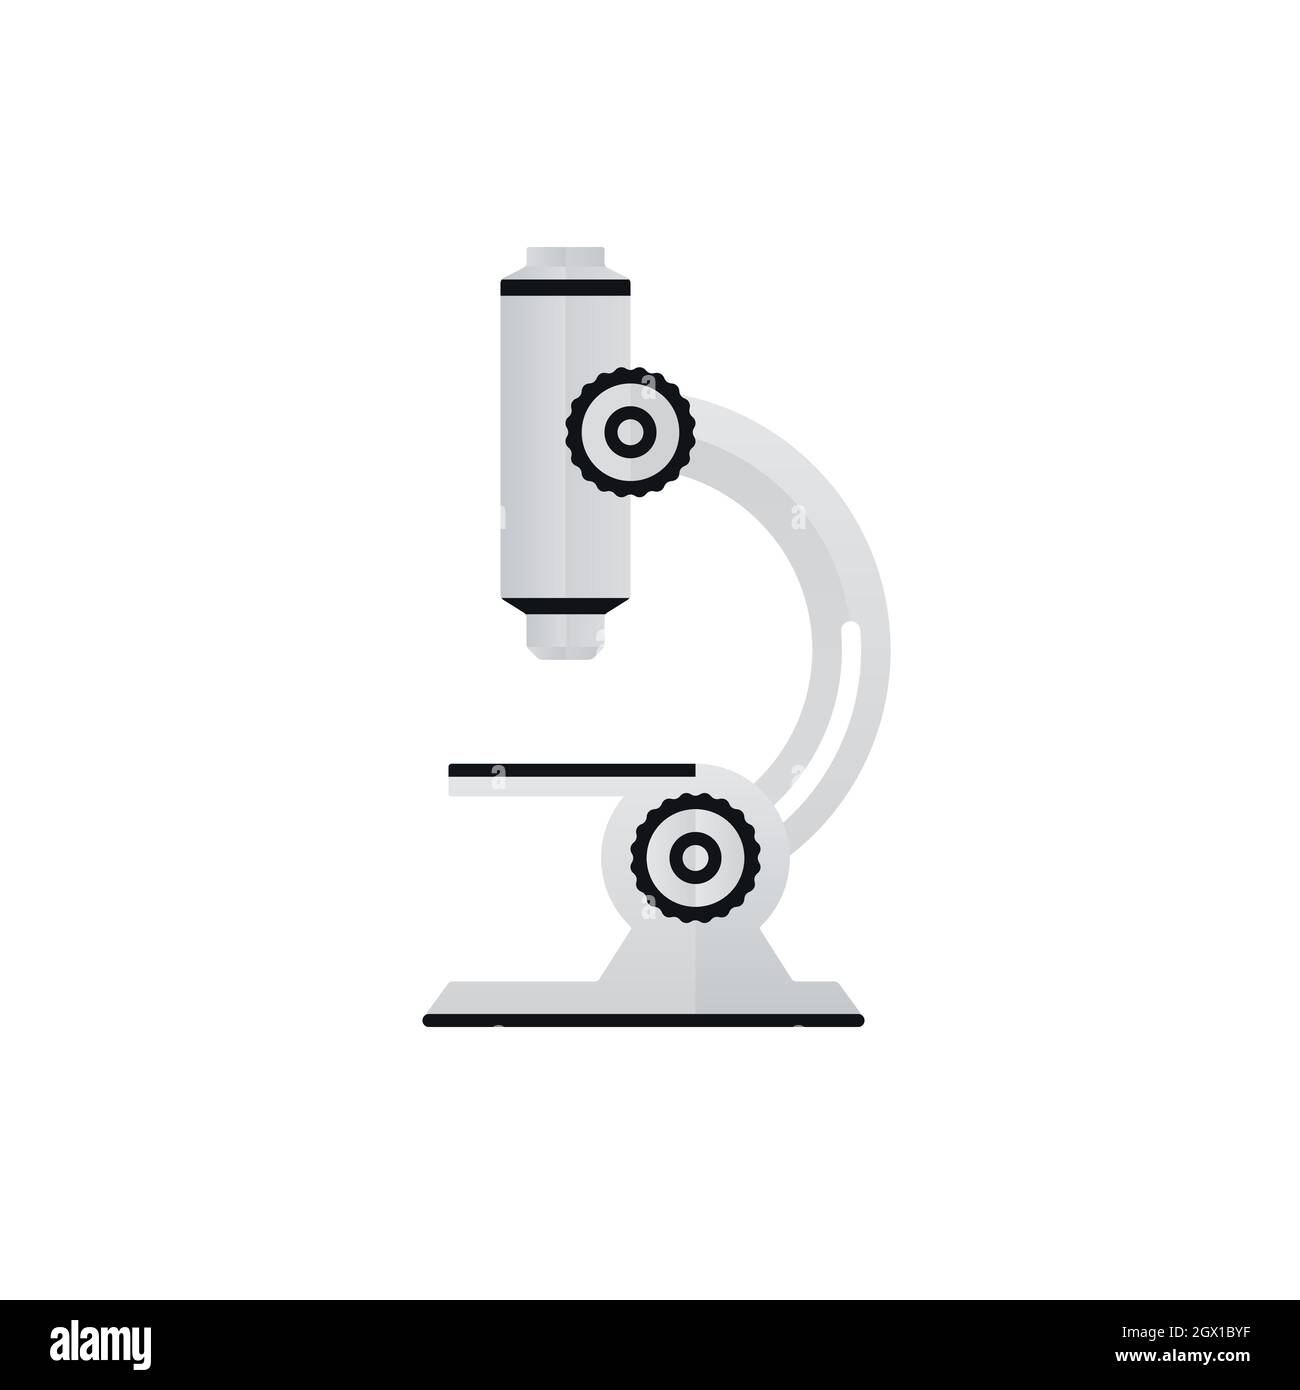 Microscope paper art symbol on white background. Scientific research laboratory equipment icon design. Stock Vector